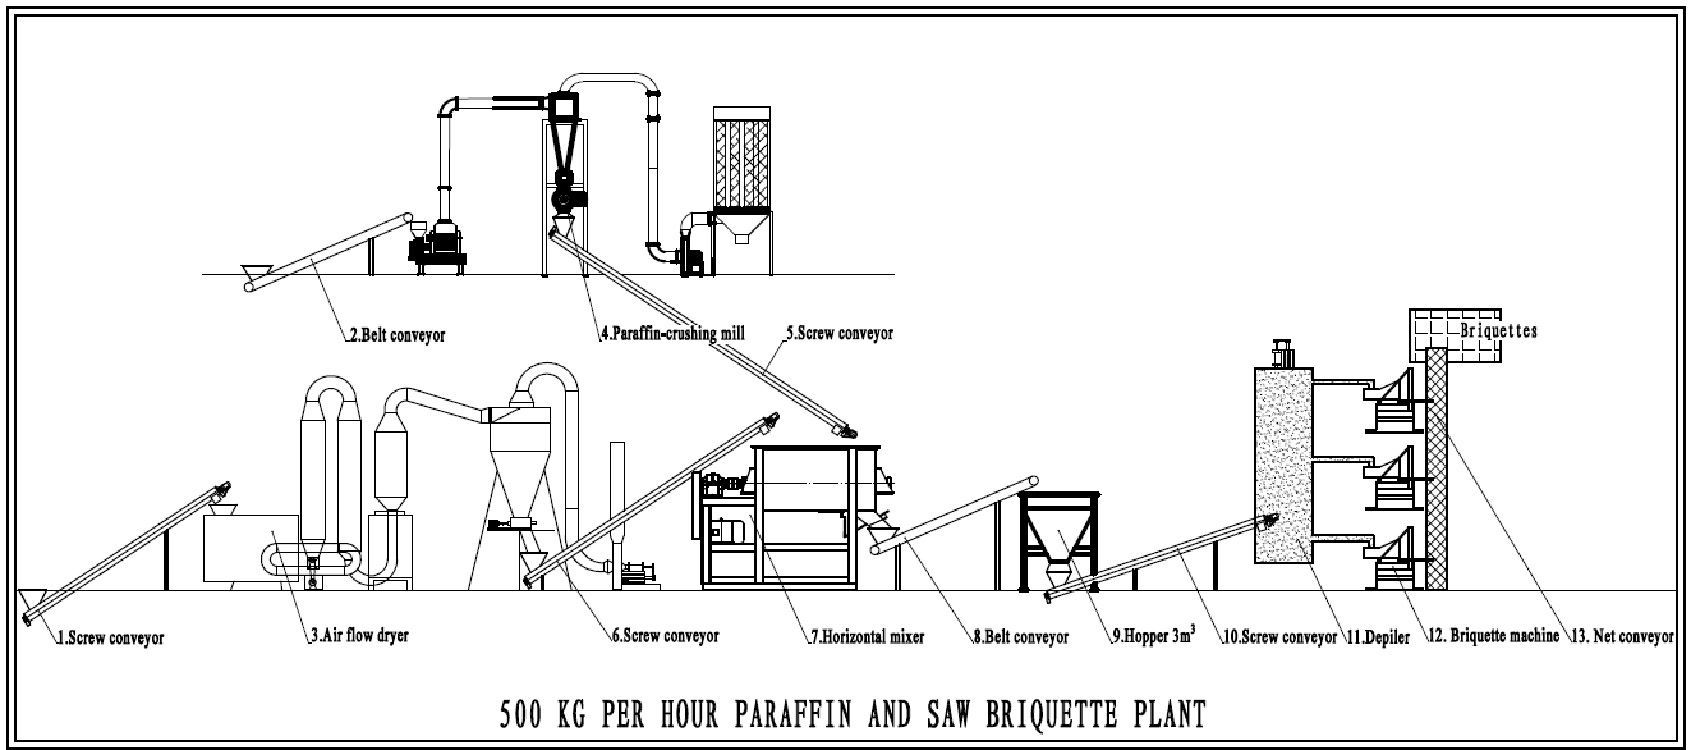 Paraffin and Sawdust Briquette Plant